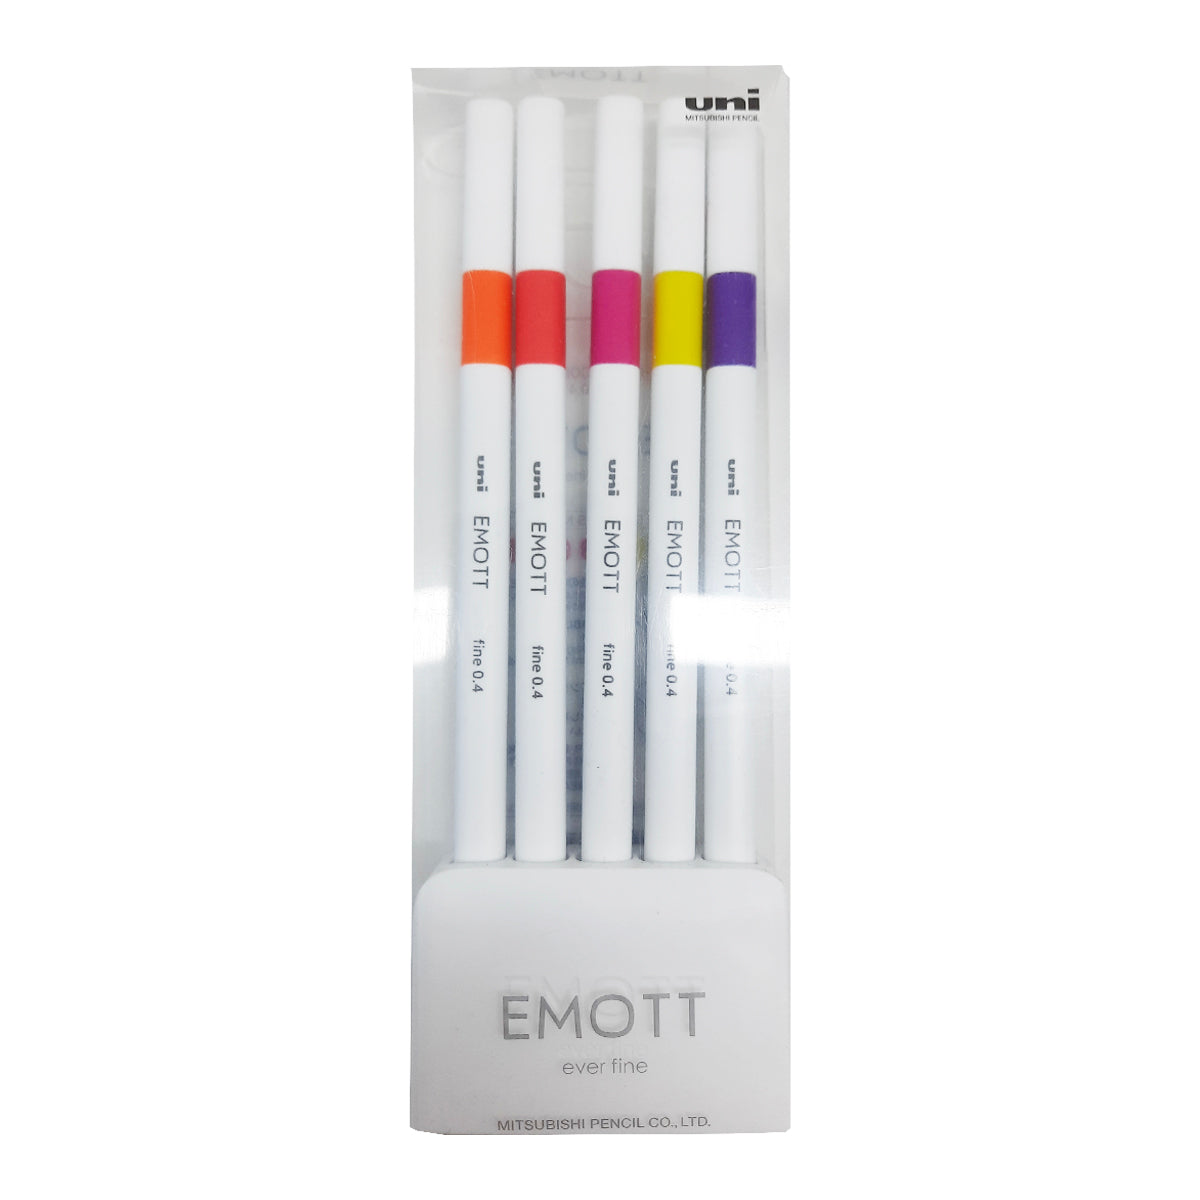 Uniball Emott 0.4 Fineliner 5 Color Set No.2 from najmaonline.com Art & Craft pens Abu Dhabi, Dubai - UAE